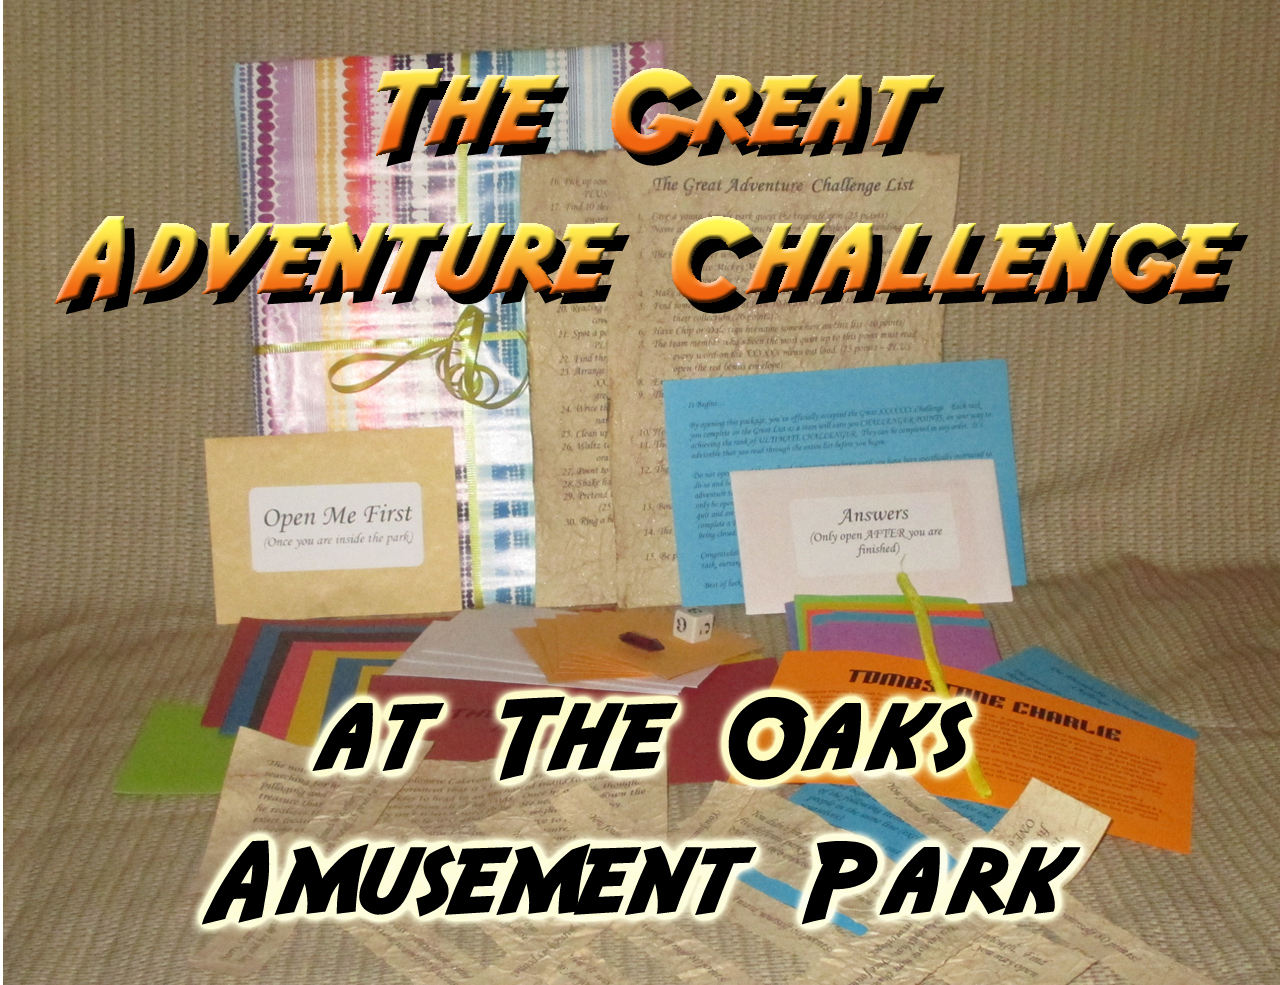 the oaks amusement park scavenger hunt